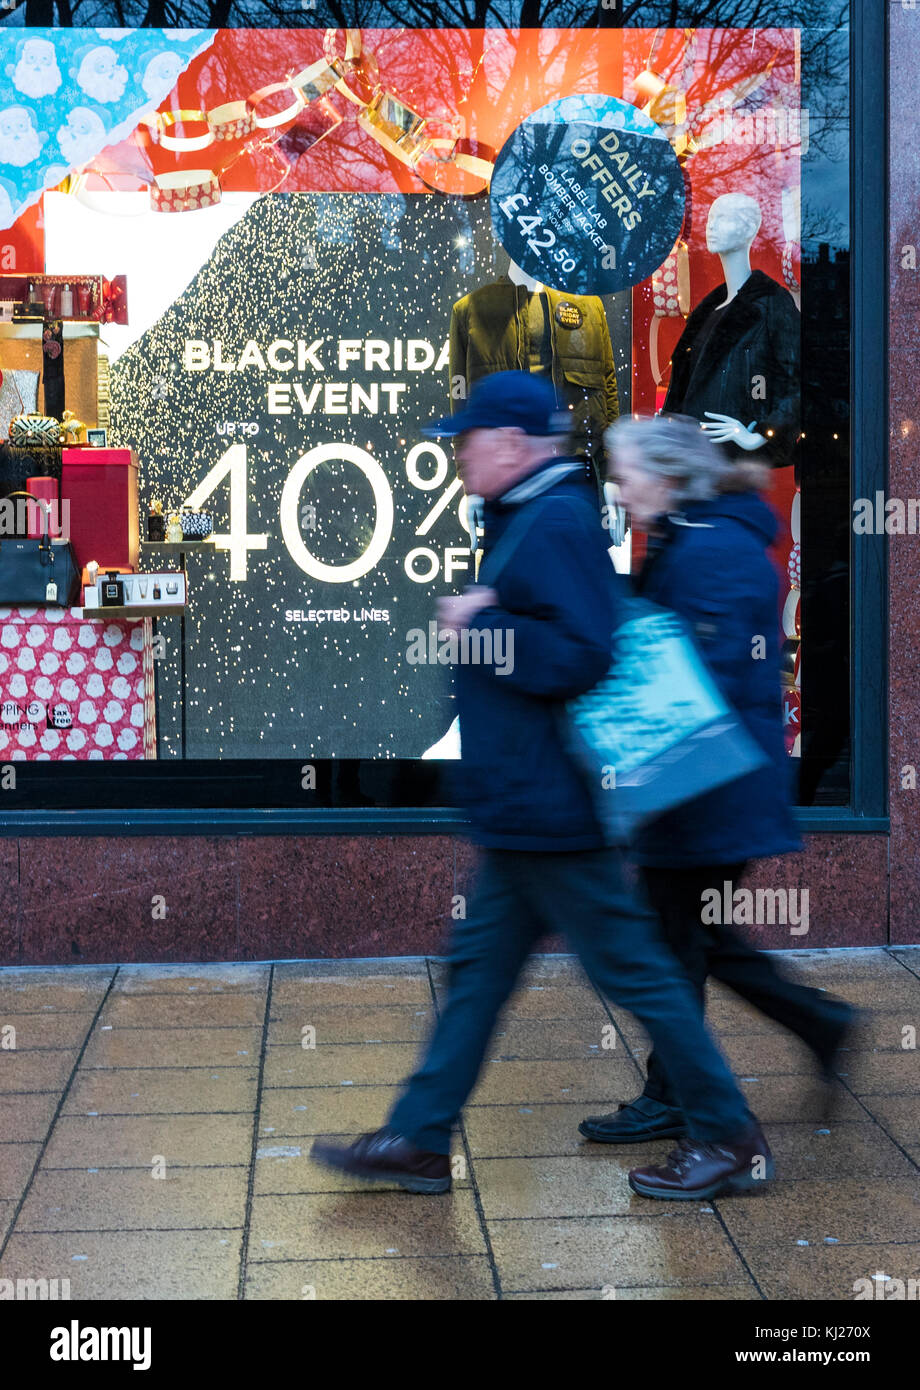 Edinburgh, Ecosse, Royaume-Uni. 21 nov, 2017. En prévision de vendredi noir dans les boutiques de Princes Street d'Édimbourg, annoncer leurs ventes avant Noël afin de stimuler un flagging high street performance. pour éviter des scènes de chaos beaucoup de détaillants ont étendu leurs ventes jusqu'à deux semaines avant le 24 novembre, la date traditionnelle quand les détaillants américains ont réduit leurs prix le jour après jour de Thanksgiving. crédit : riche de Dyson/Alamy live news Banque D'Images